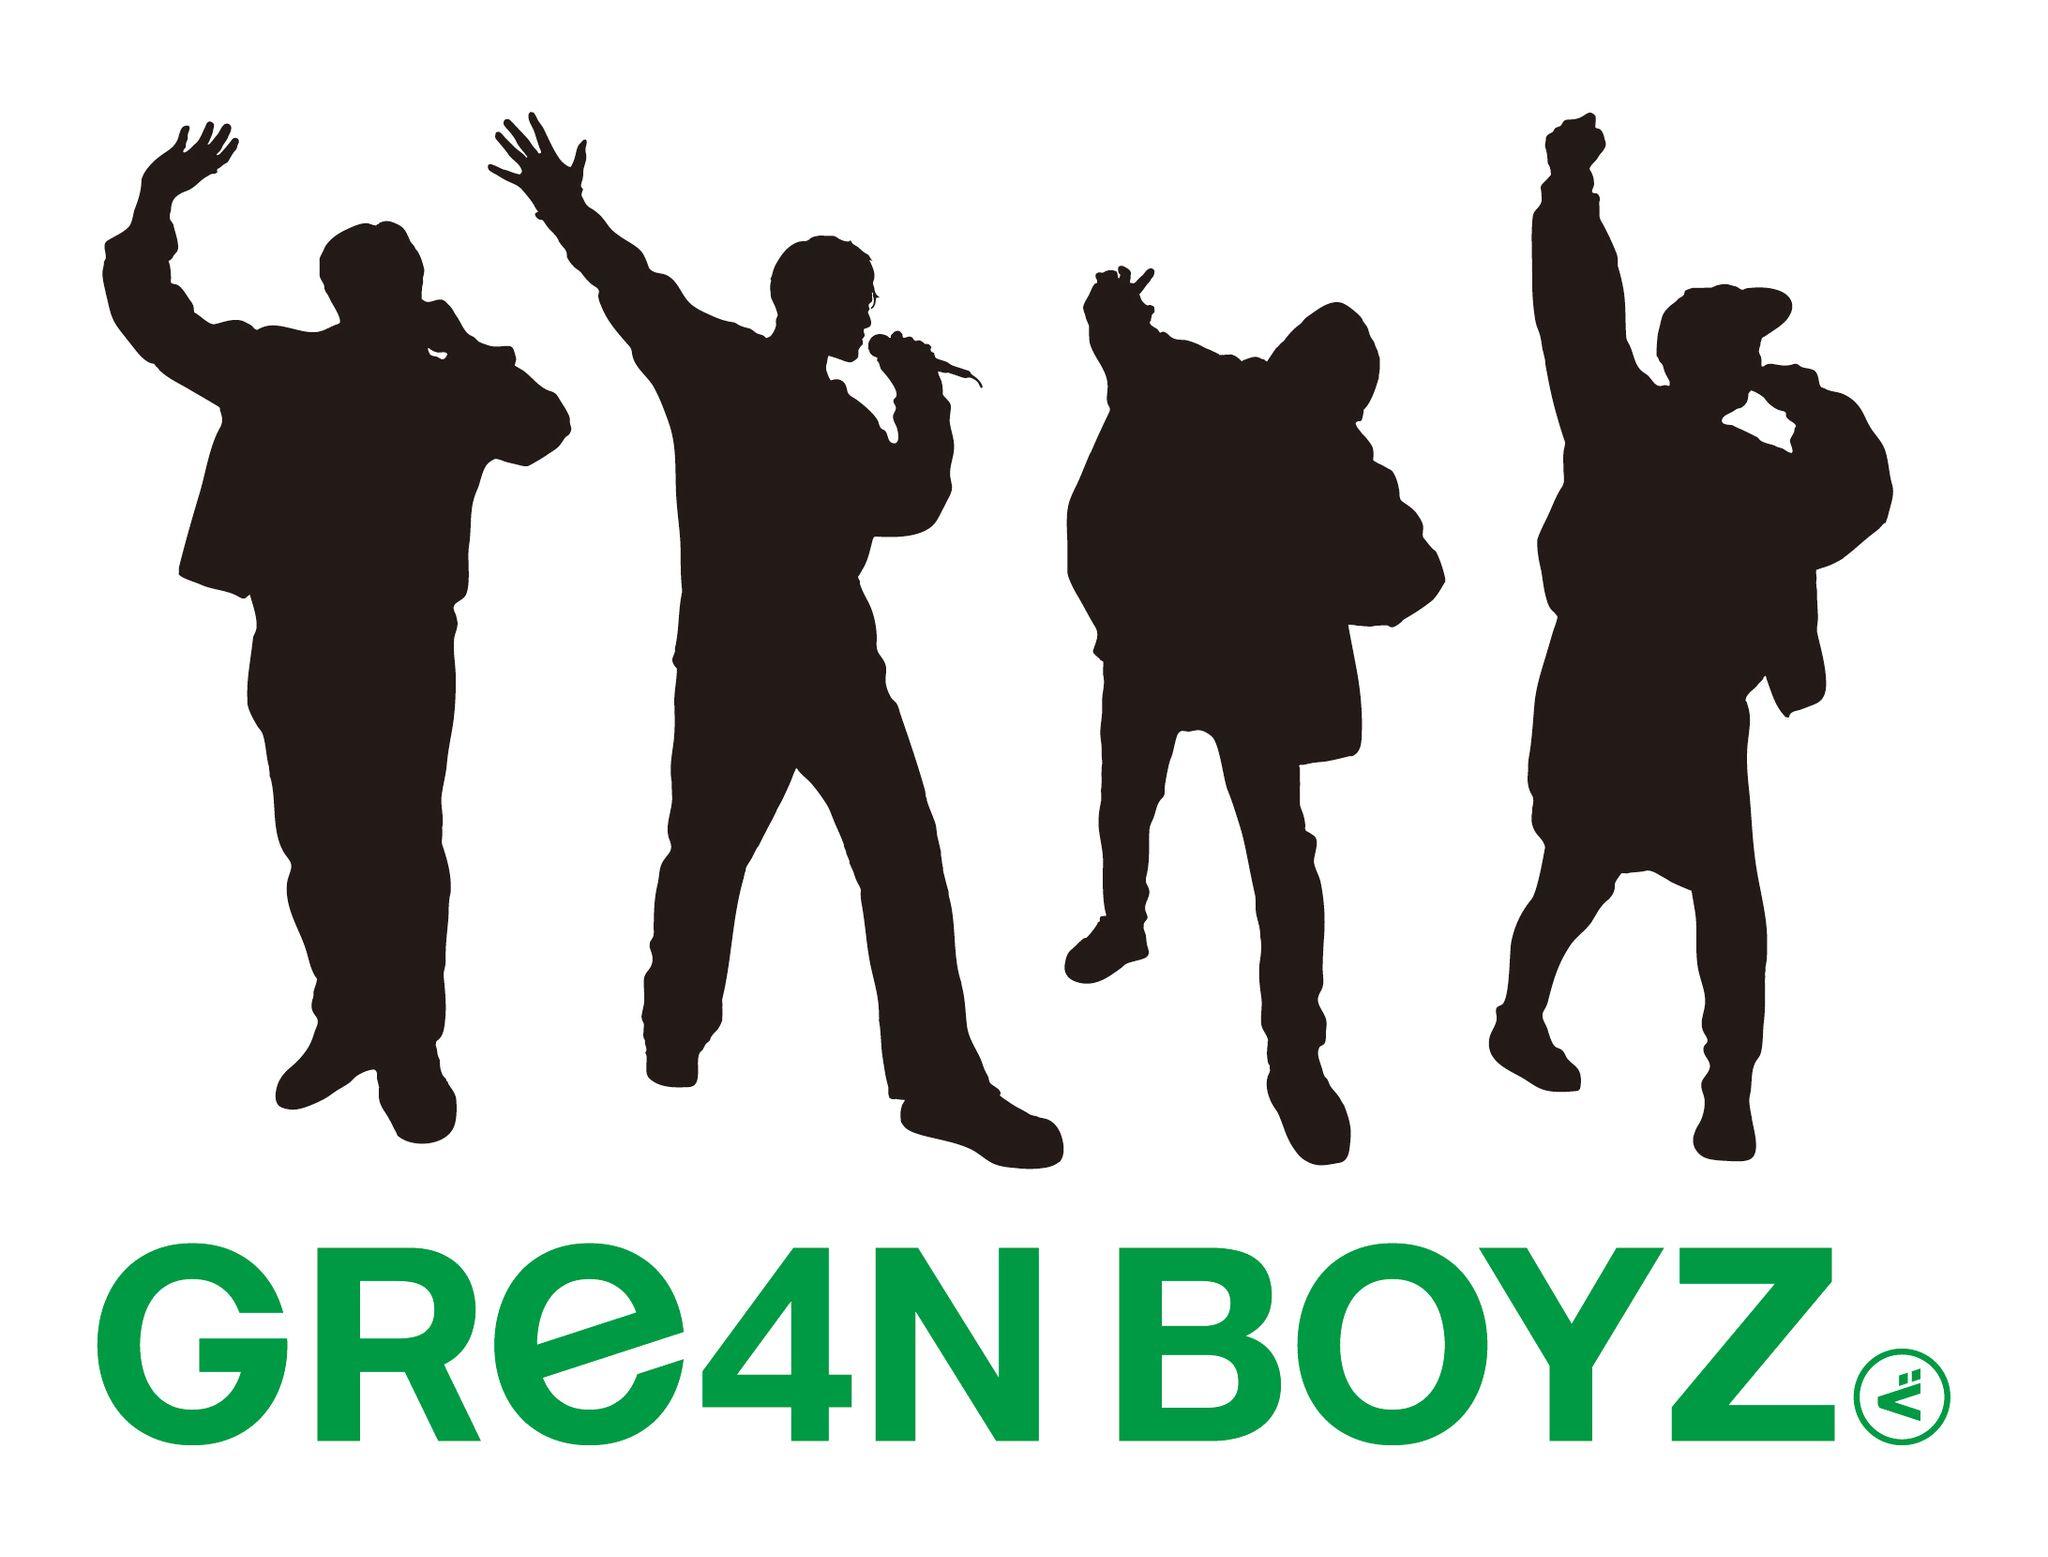 『GReeeeN』が『GRe4N BOYZ（グリーンボーイズ）』に改名 「所属事務所を退所しメンバー4人で新たな挑戦」